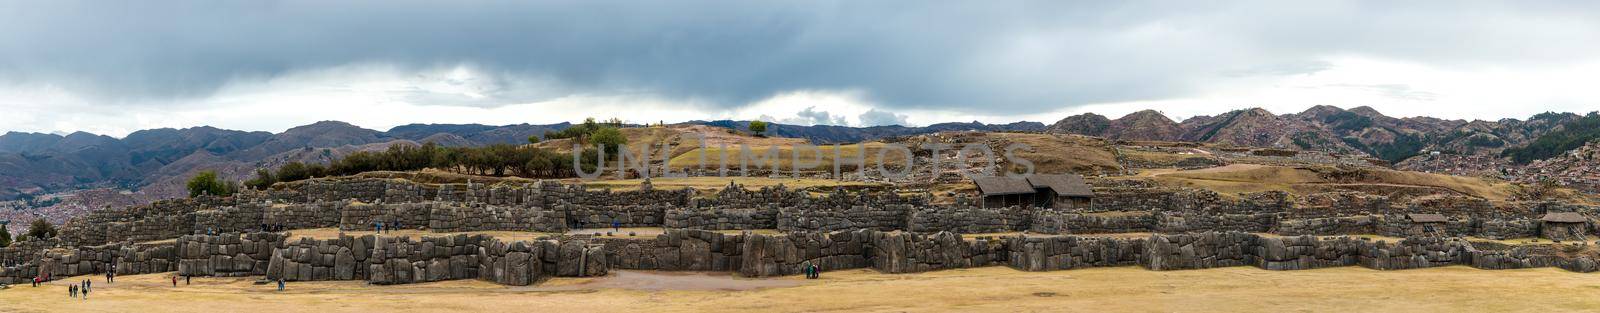 Ruined castle Saksaywaman in Peru by tan4ikk1